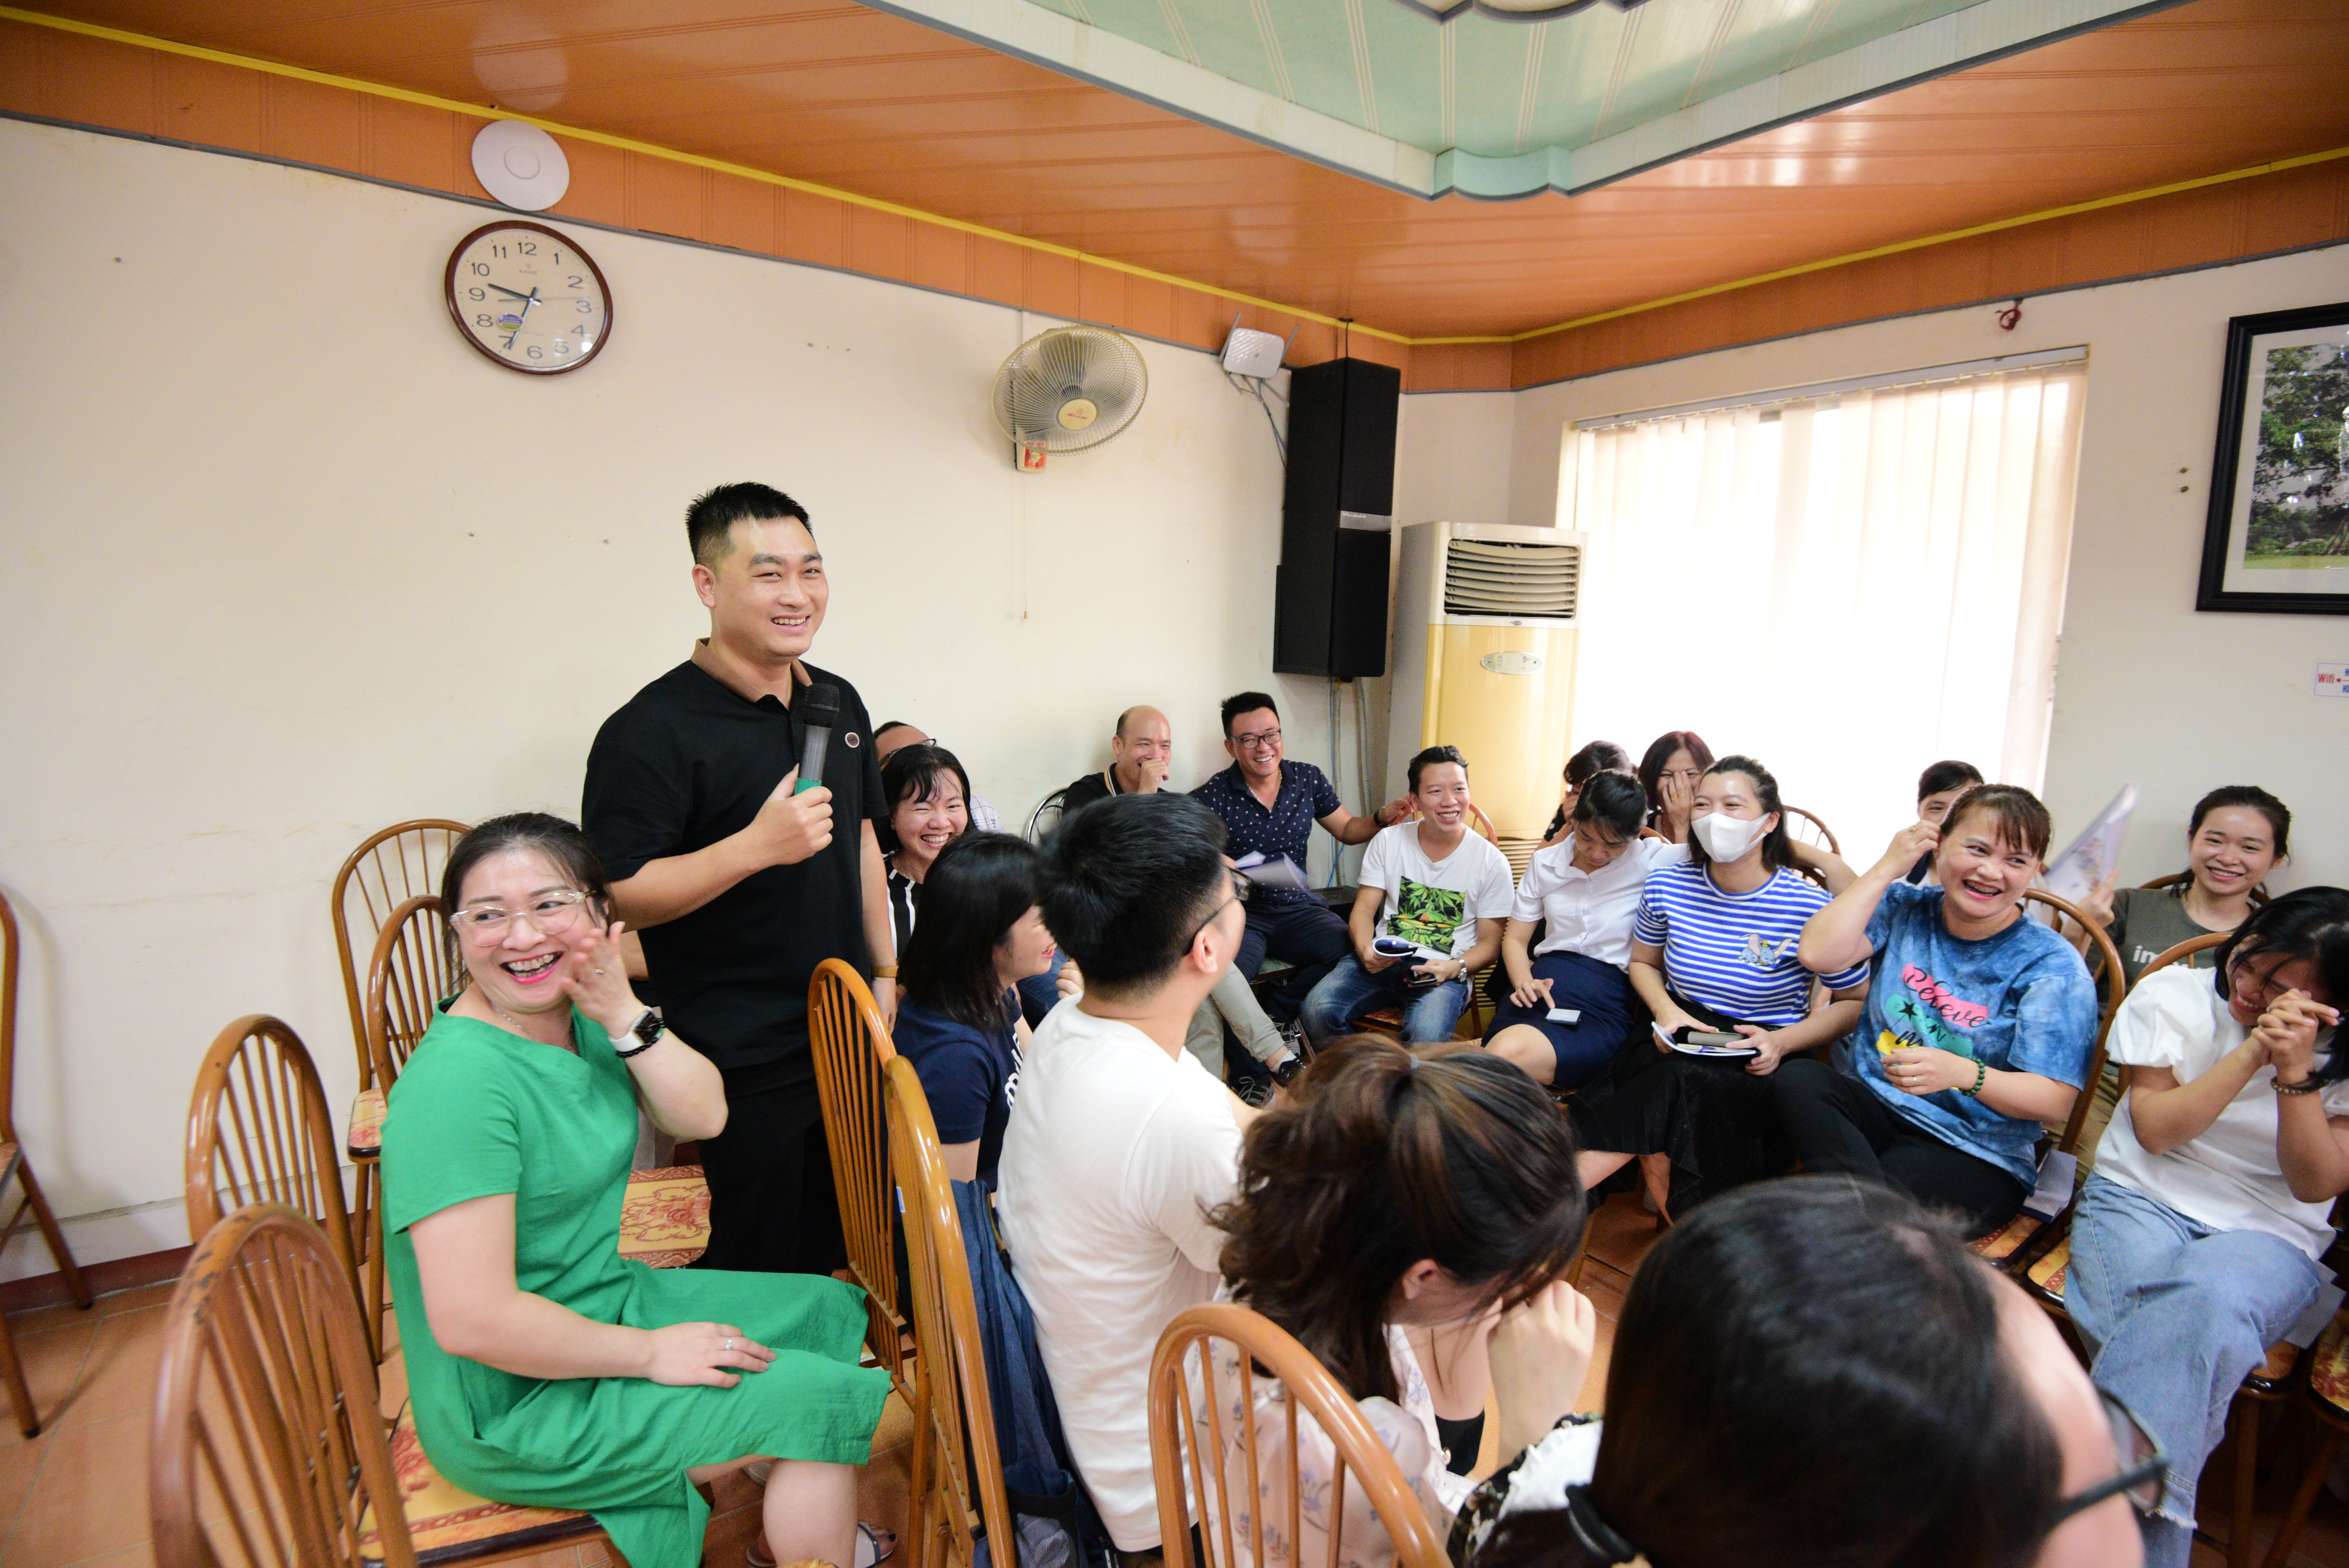 CDC Quảng Ninh tổ chức đào tạo nâng cao chất lượng dịch vụ khách hàng